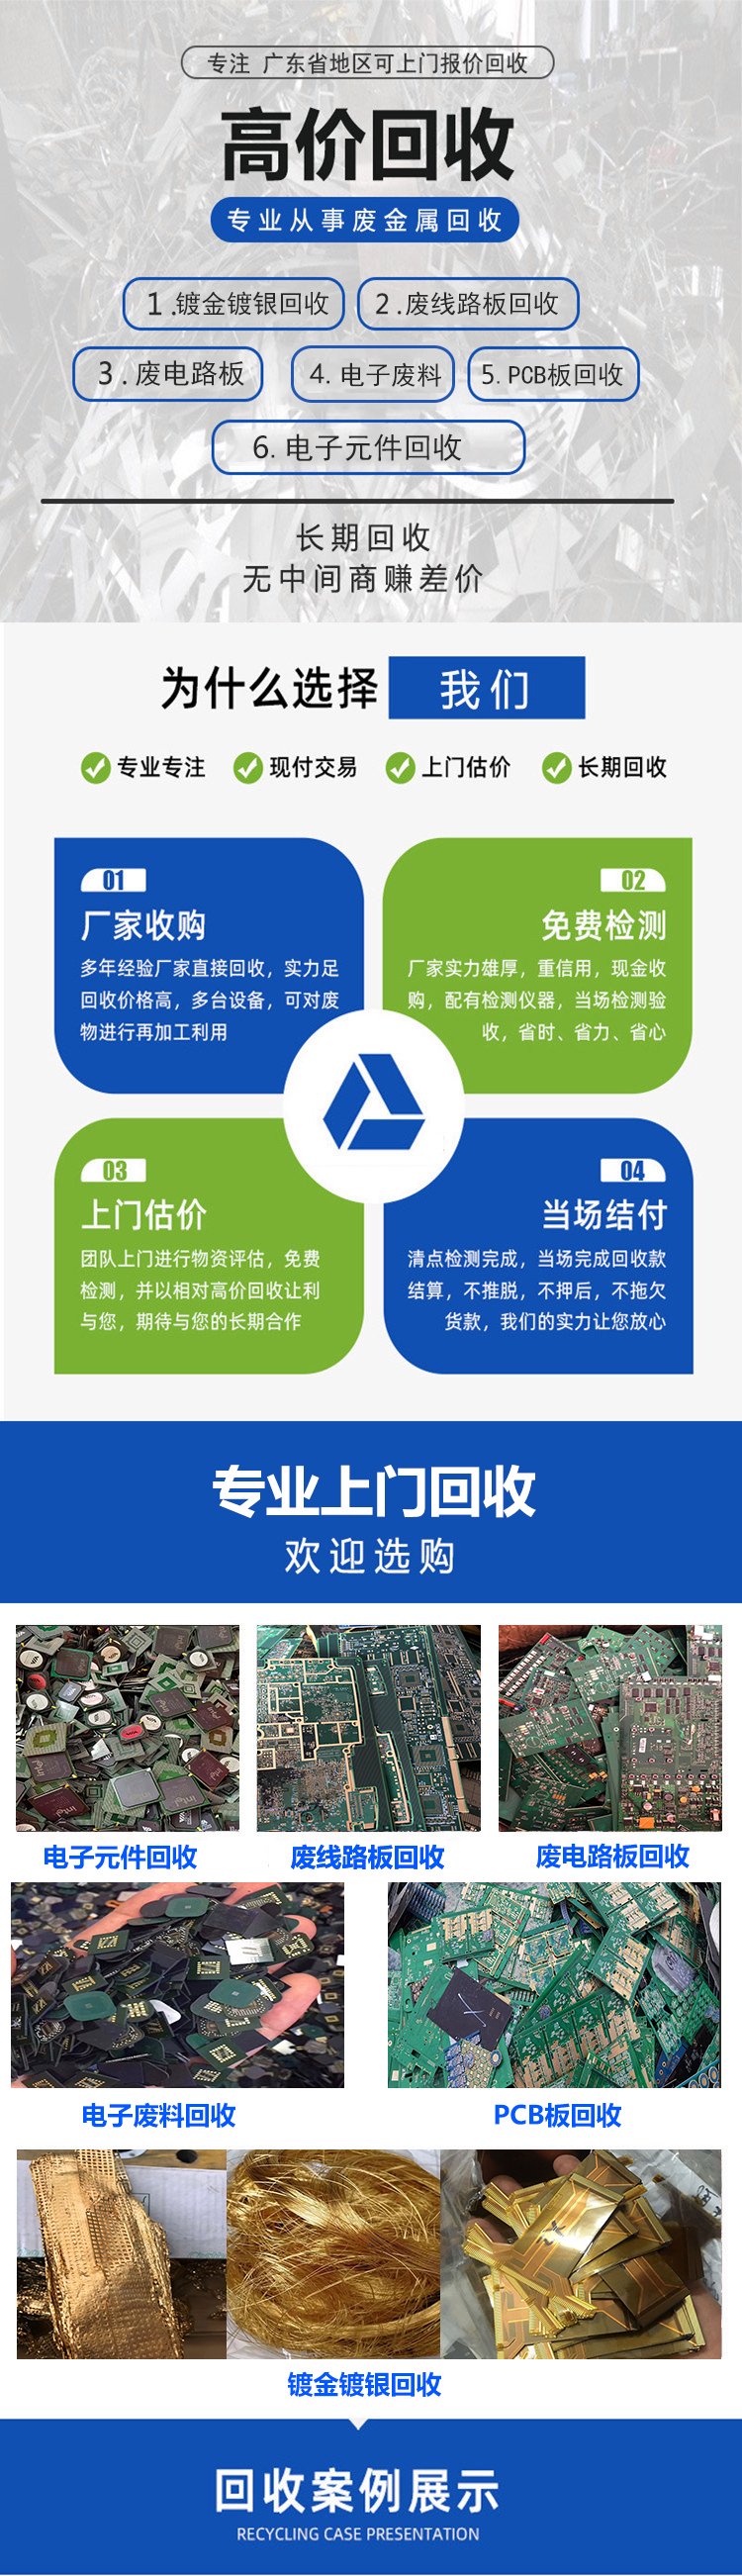 广州白云区假冒产品销毁报废回收处理中心